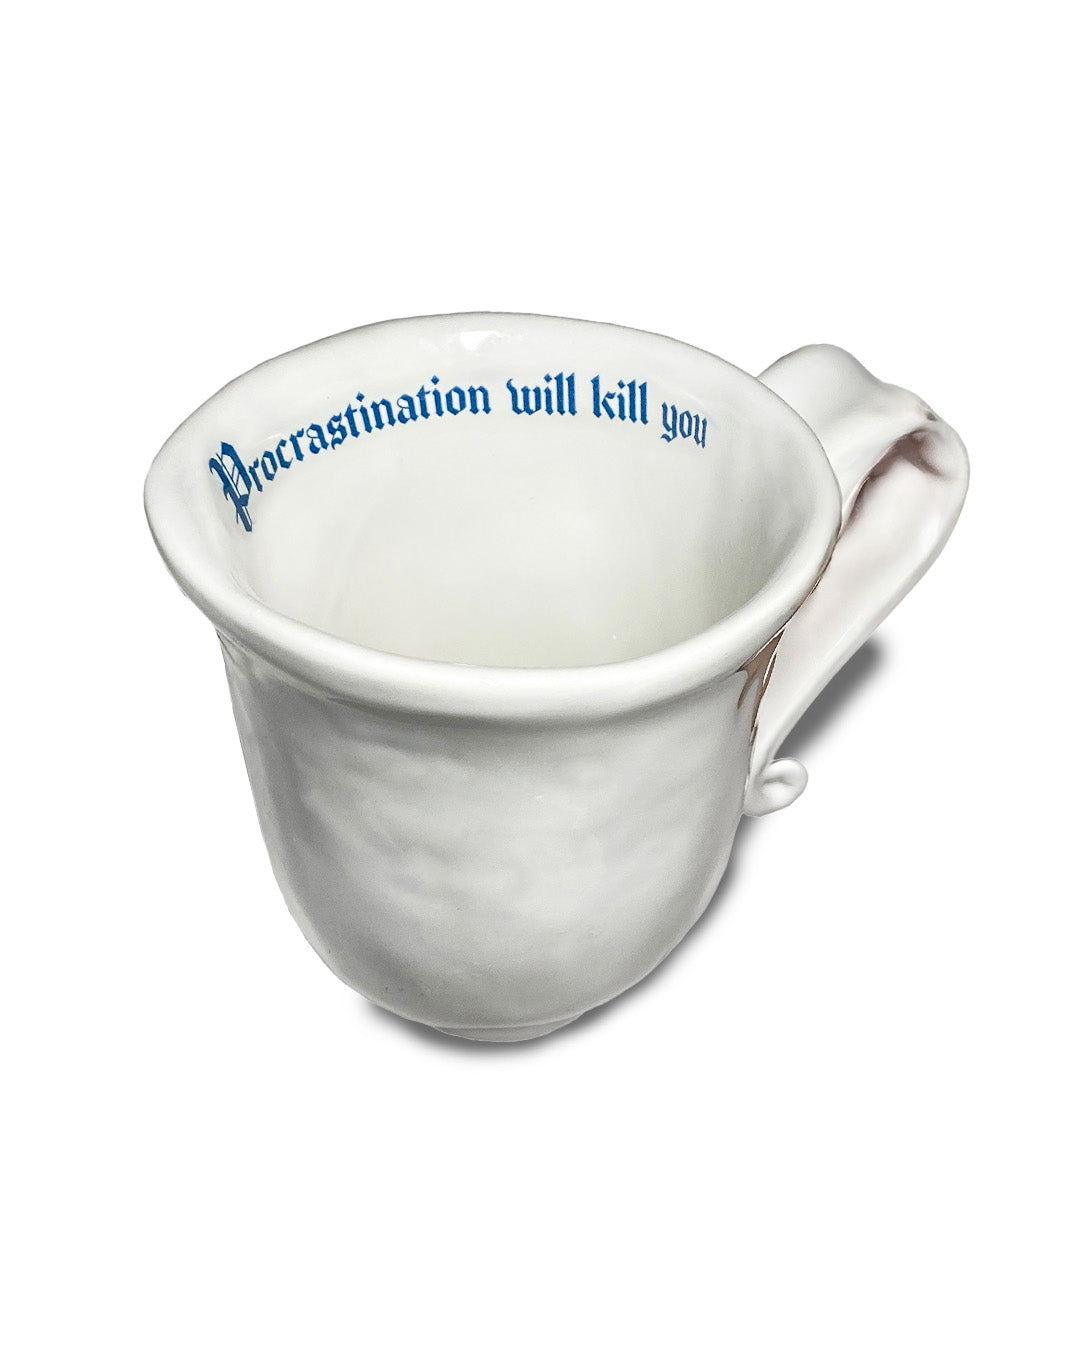 "Procrastination will kill you" Sassy Mug